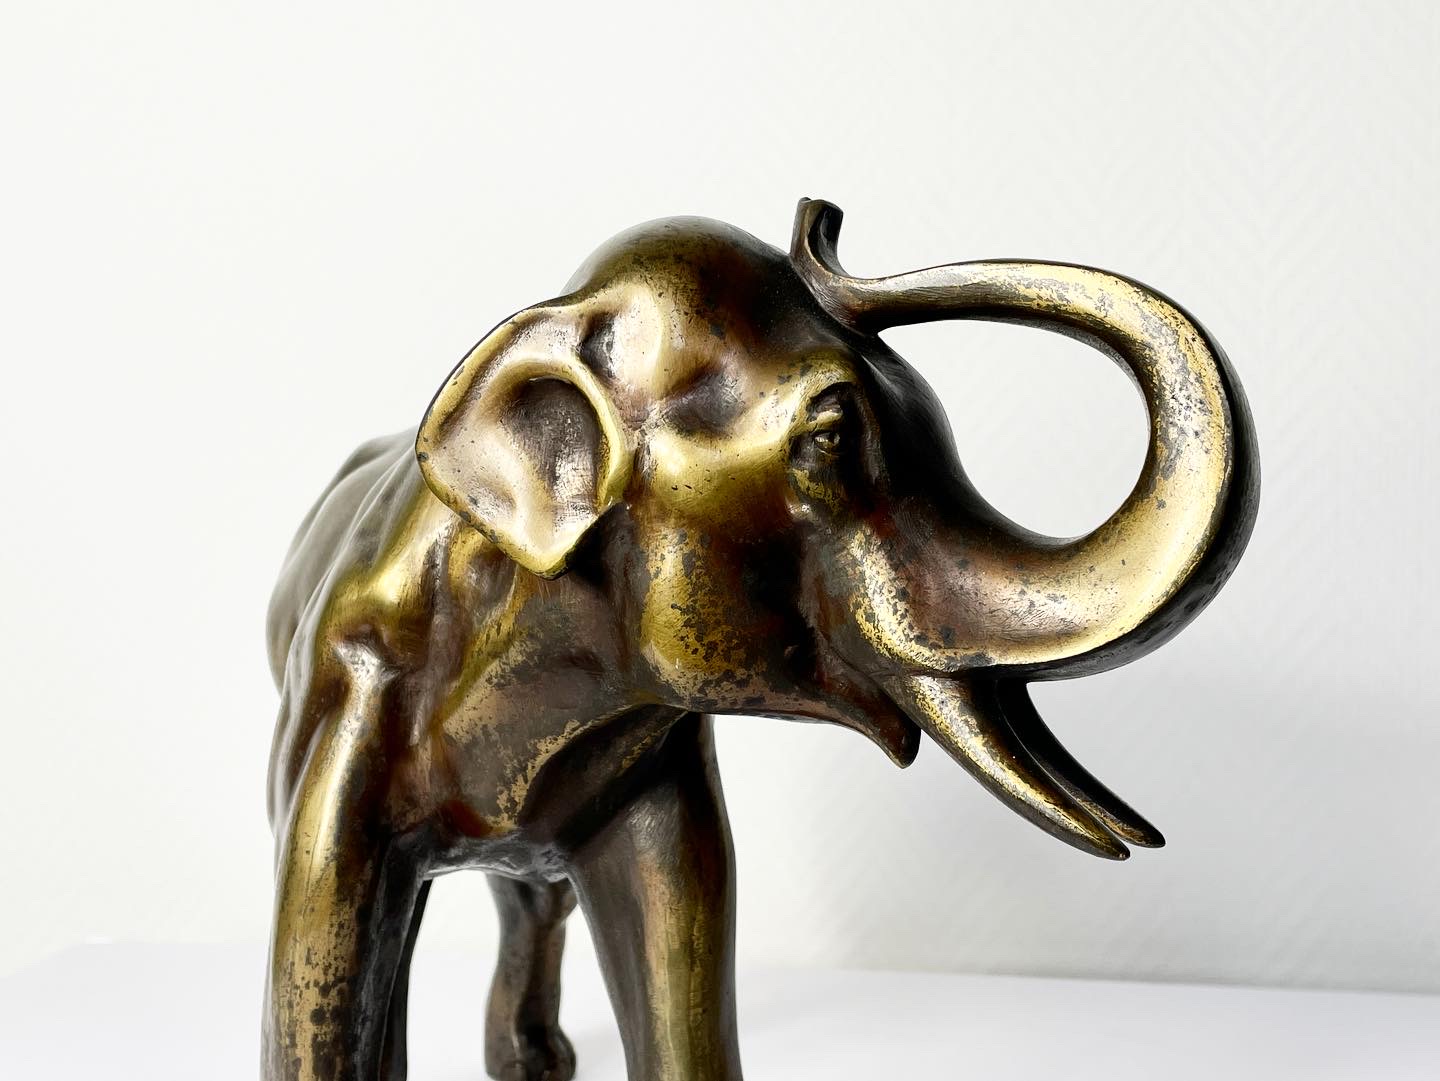 Elephant-sculpture-animalière-bronze-doré-xixe-xxe-aurore-morisse-affaire-conclue-chestret5-liège-paris7